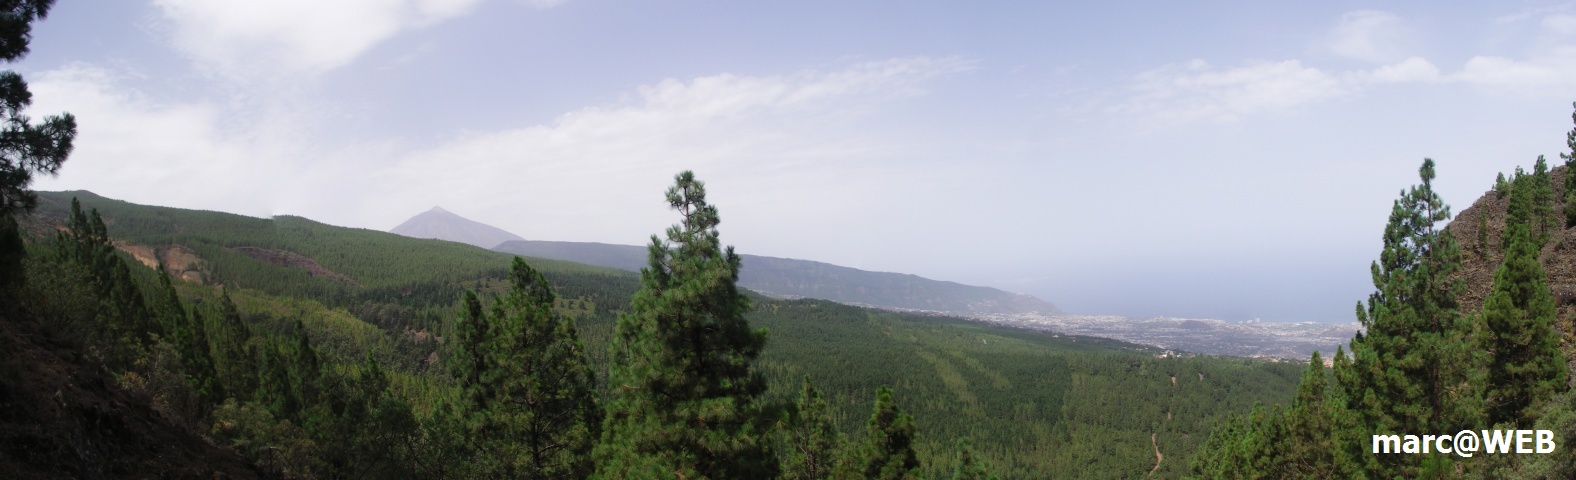 Teide_Panorama1